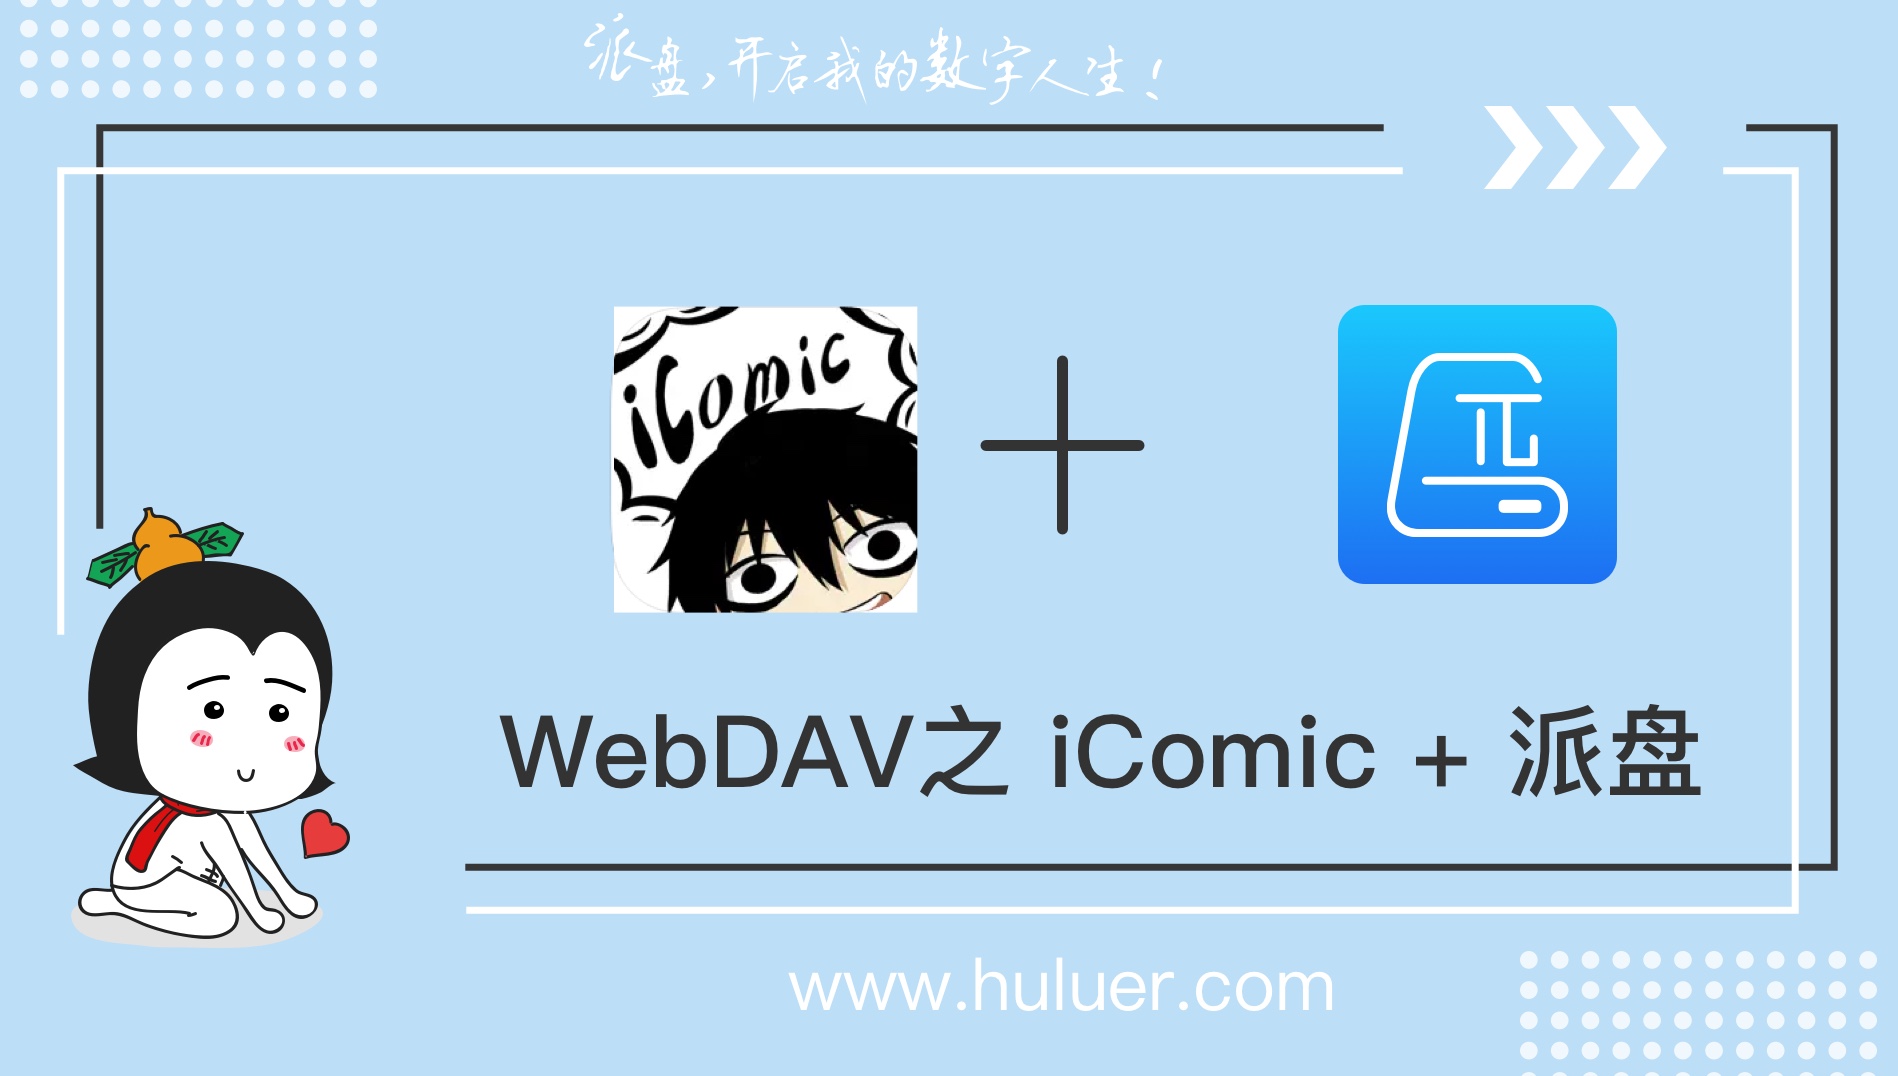 WebDAV之π-Disk派盘 + iComic